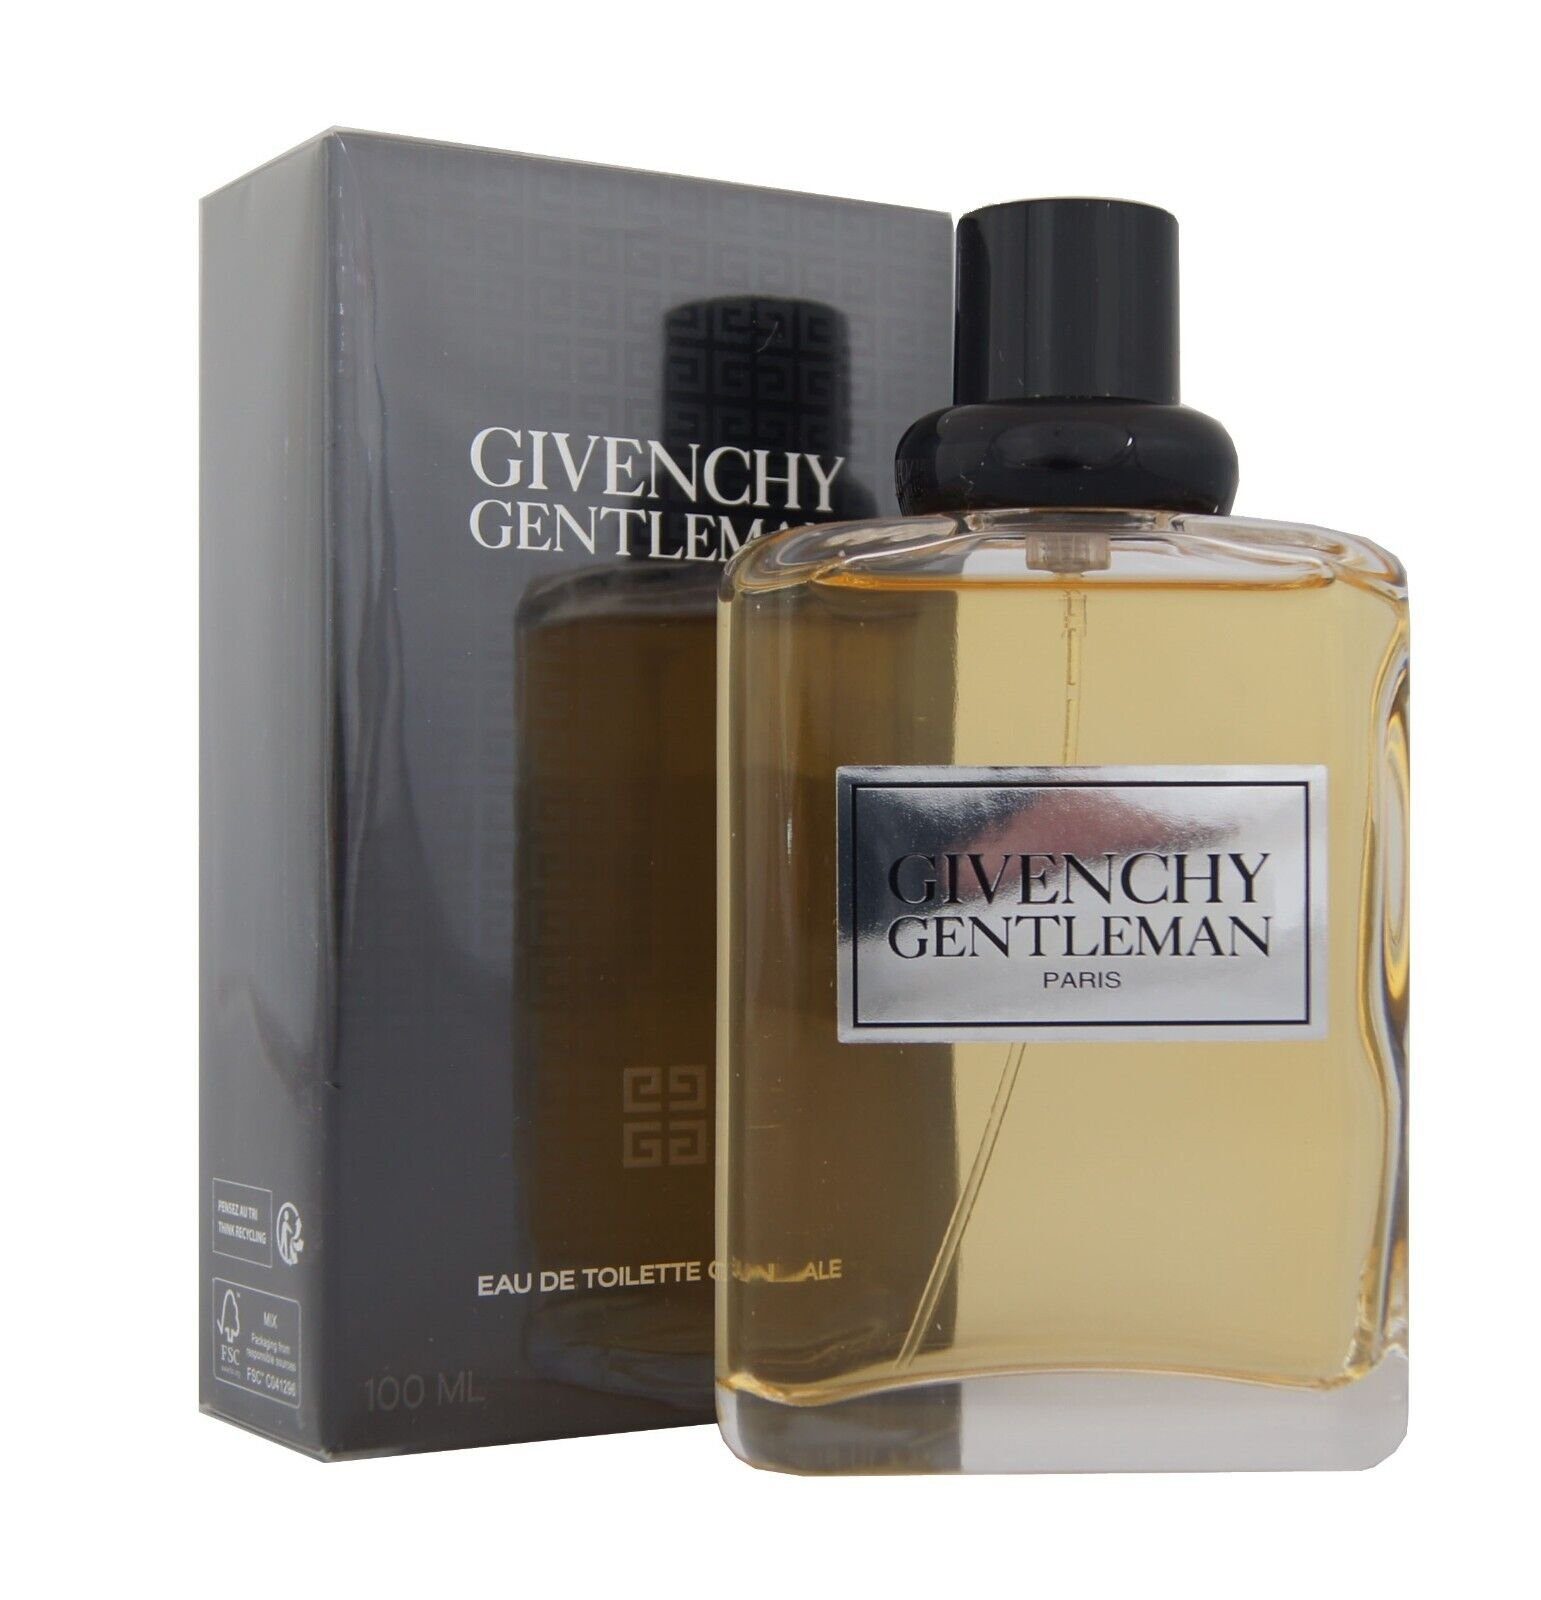 GIVENCHY Eau de Toilette Givenchy Gentleman Eau de Toilette Originale edt 100ml. | Eau de Toilette